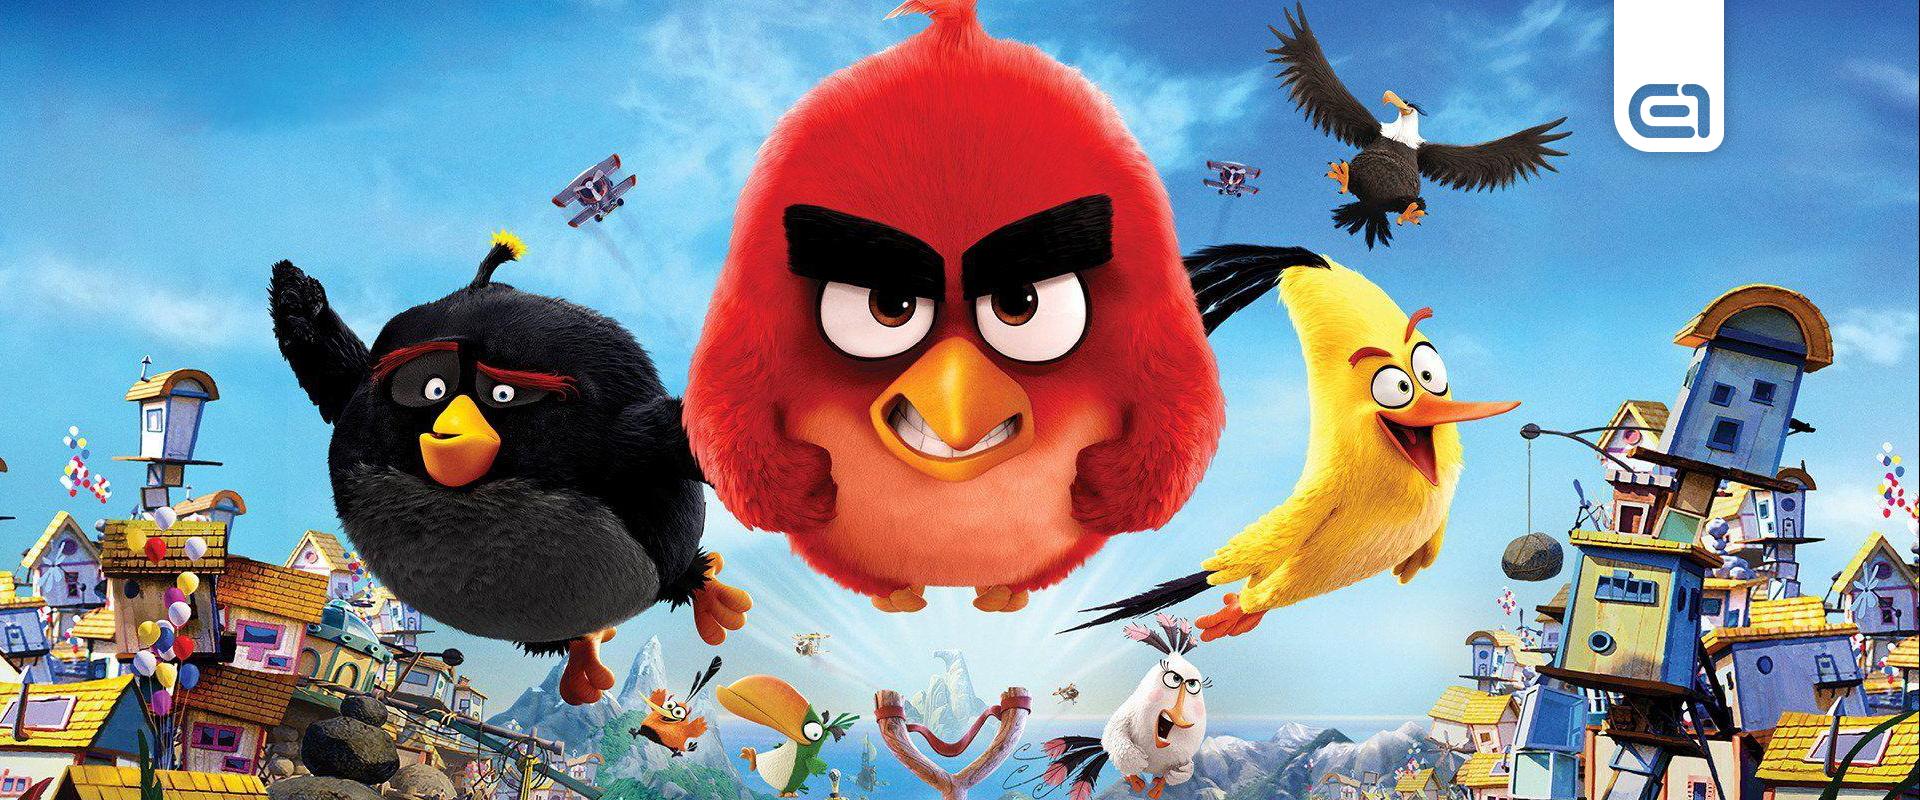 1 milliárd dollárért vásárolhatják fel az Angry Birds csapatát